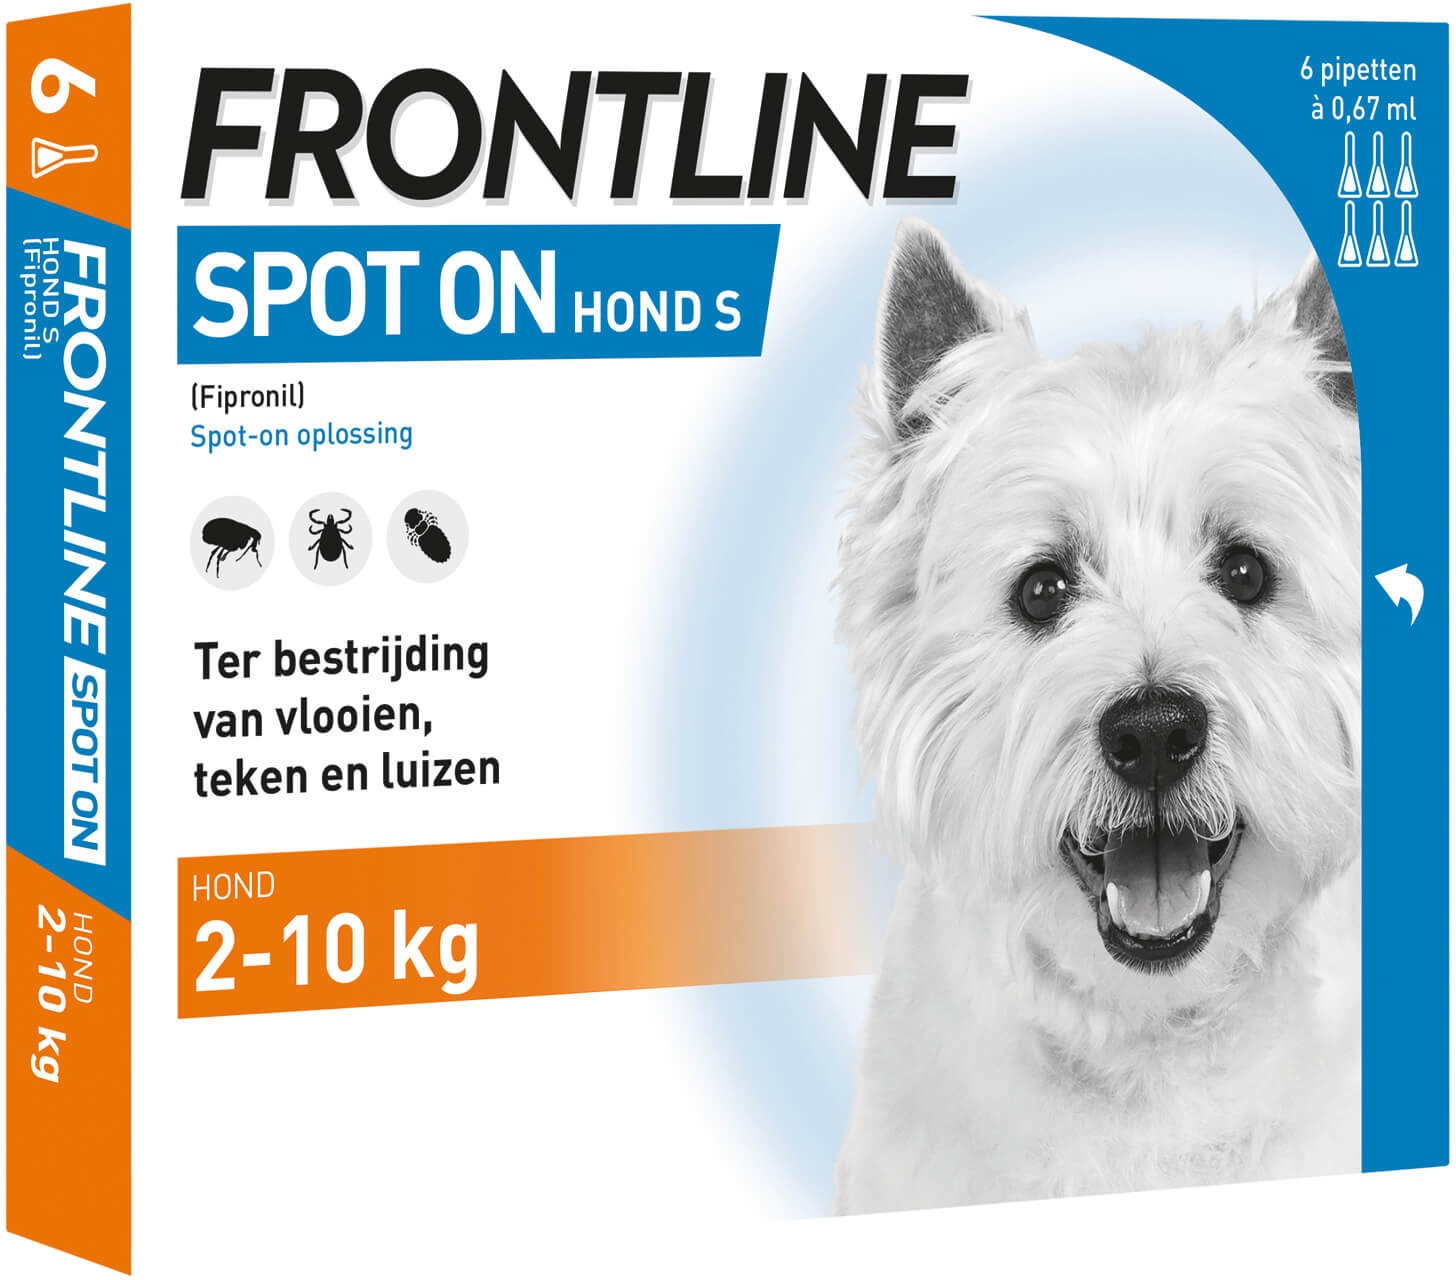 Frontline Spot-on hond  S / 2 - 10 kg  6 pipetten